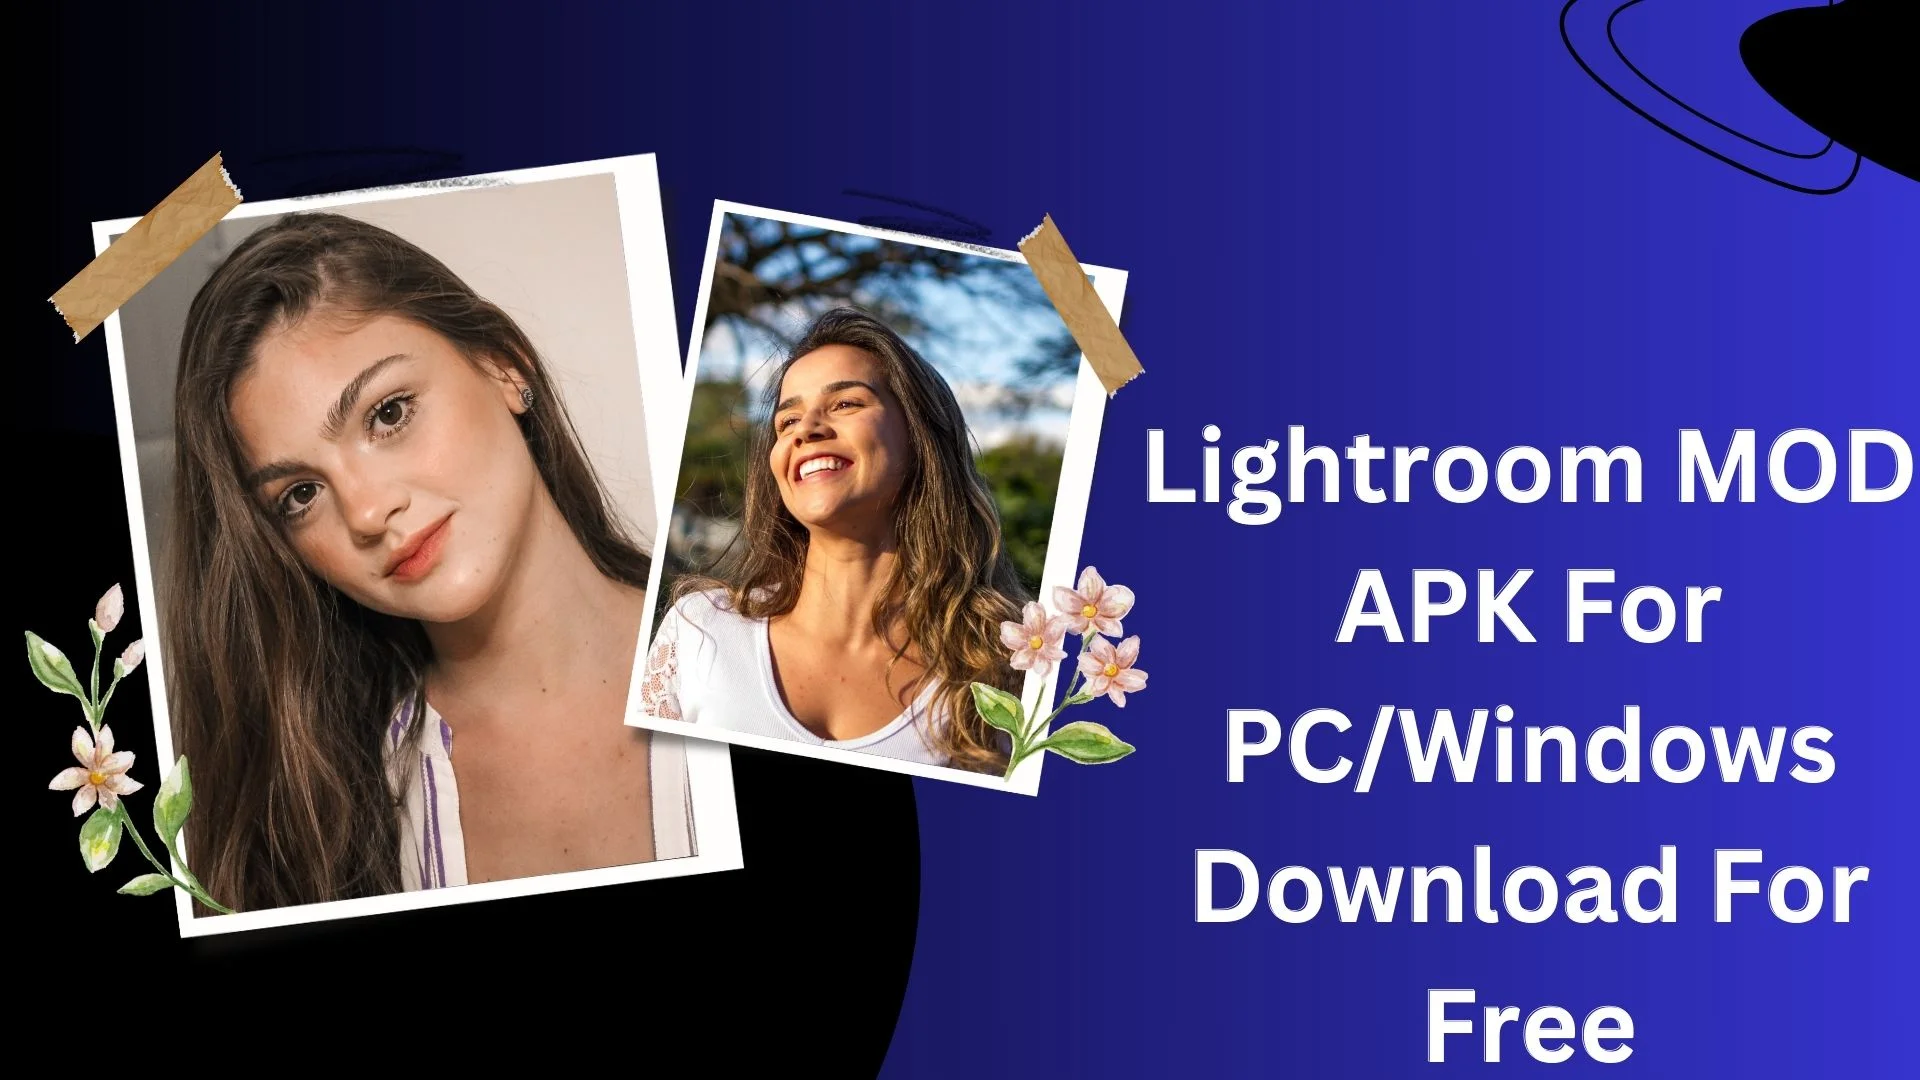 Lightroom MOD APK For PC